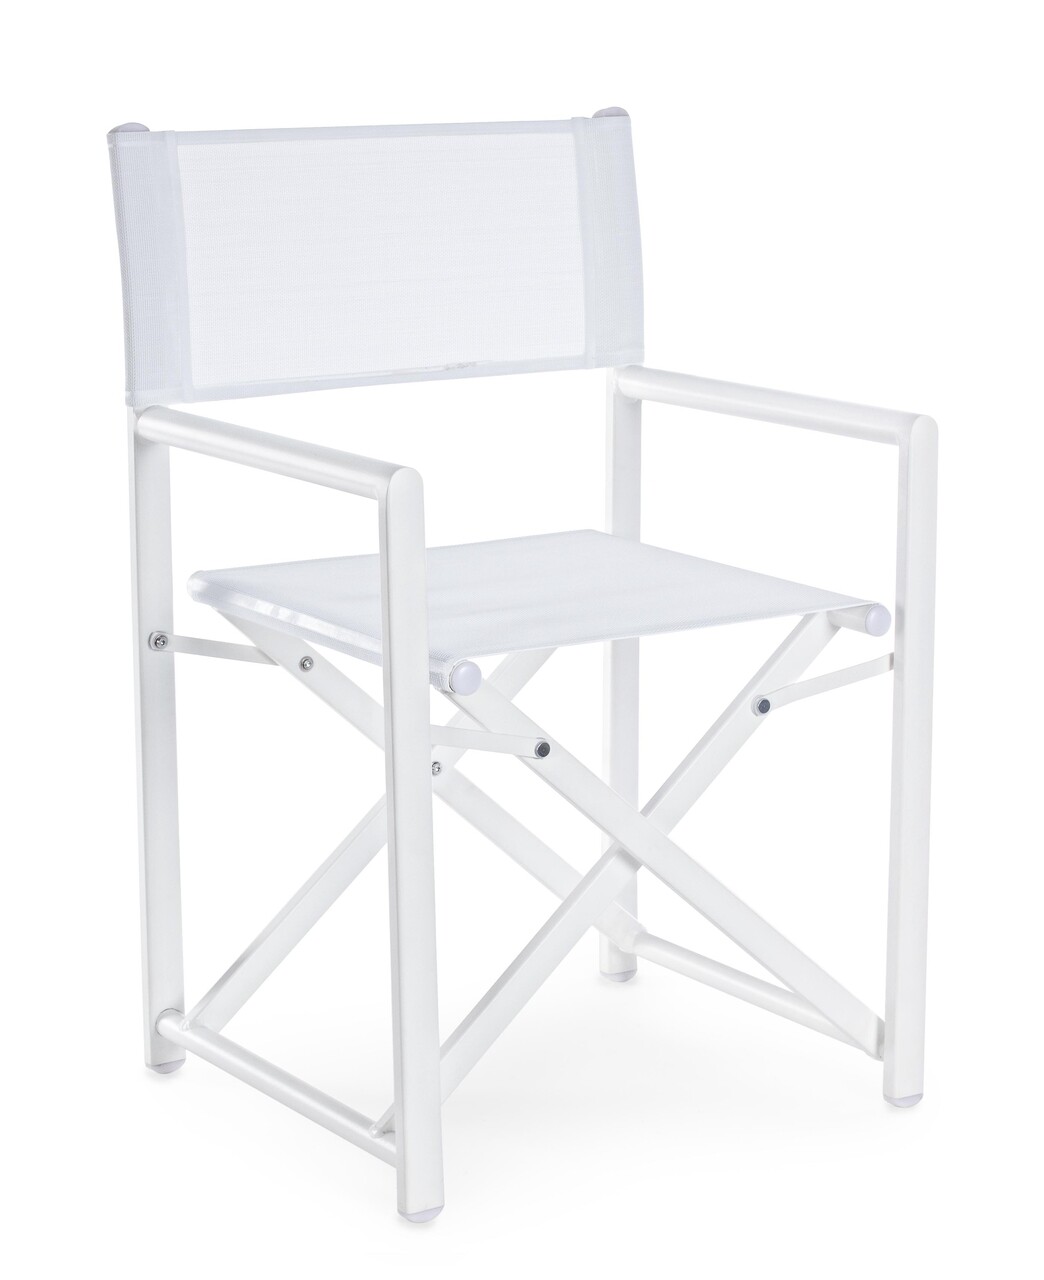 Taylor összecsukható kerti szék, bizzotto, 48 x 56 x 86 cm, alumínium/textil 2x1, fehér